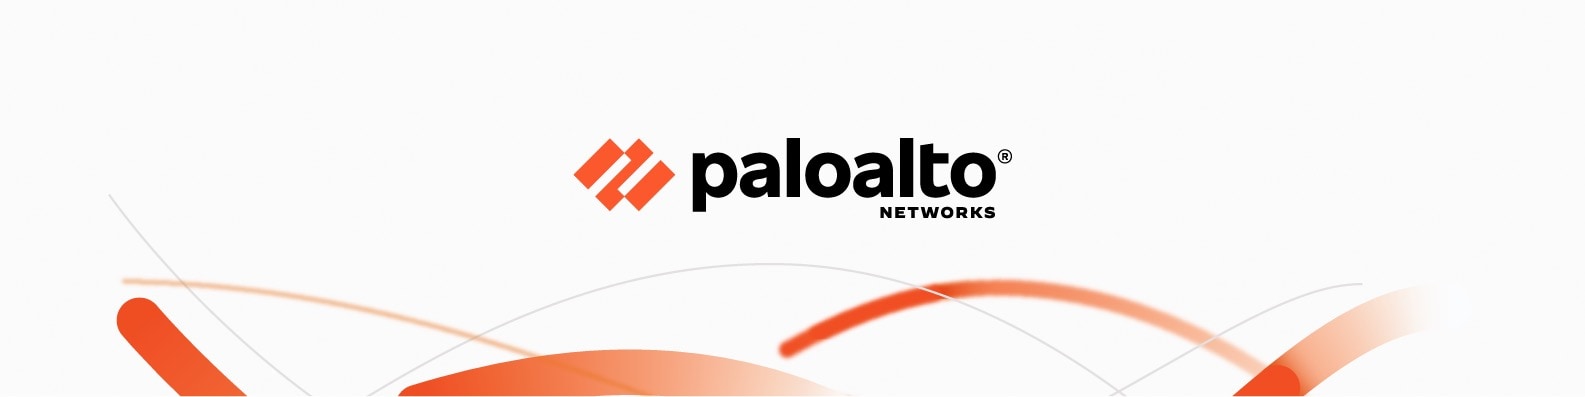 パロアルトネットワークス、2020年を通じて仮想イベントモデルへ移行